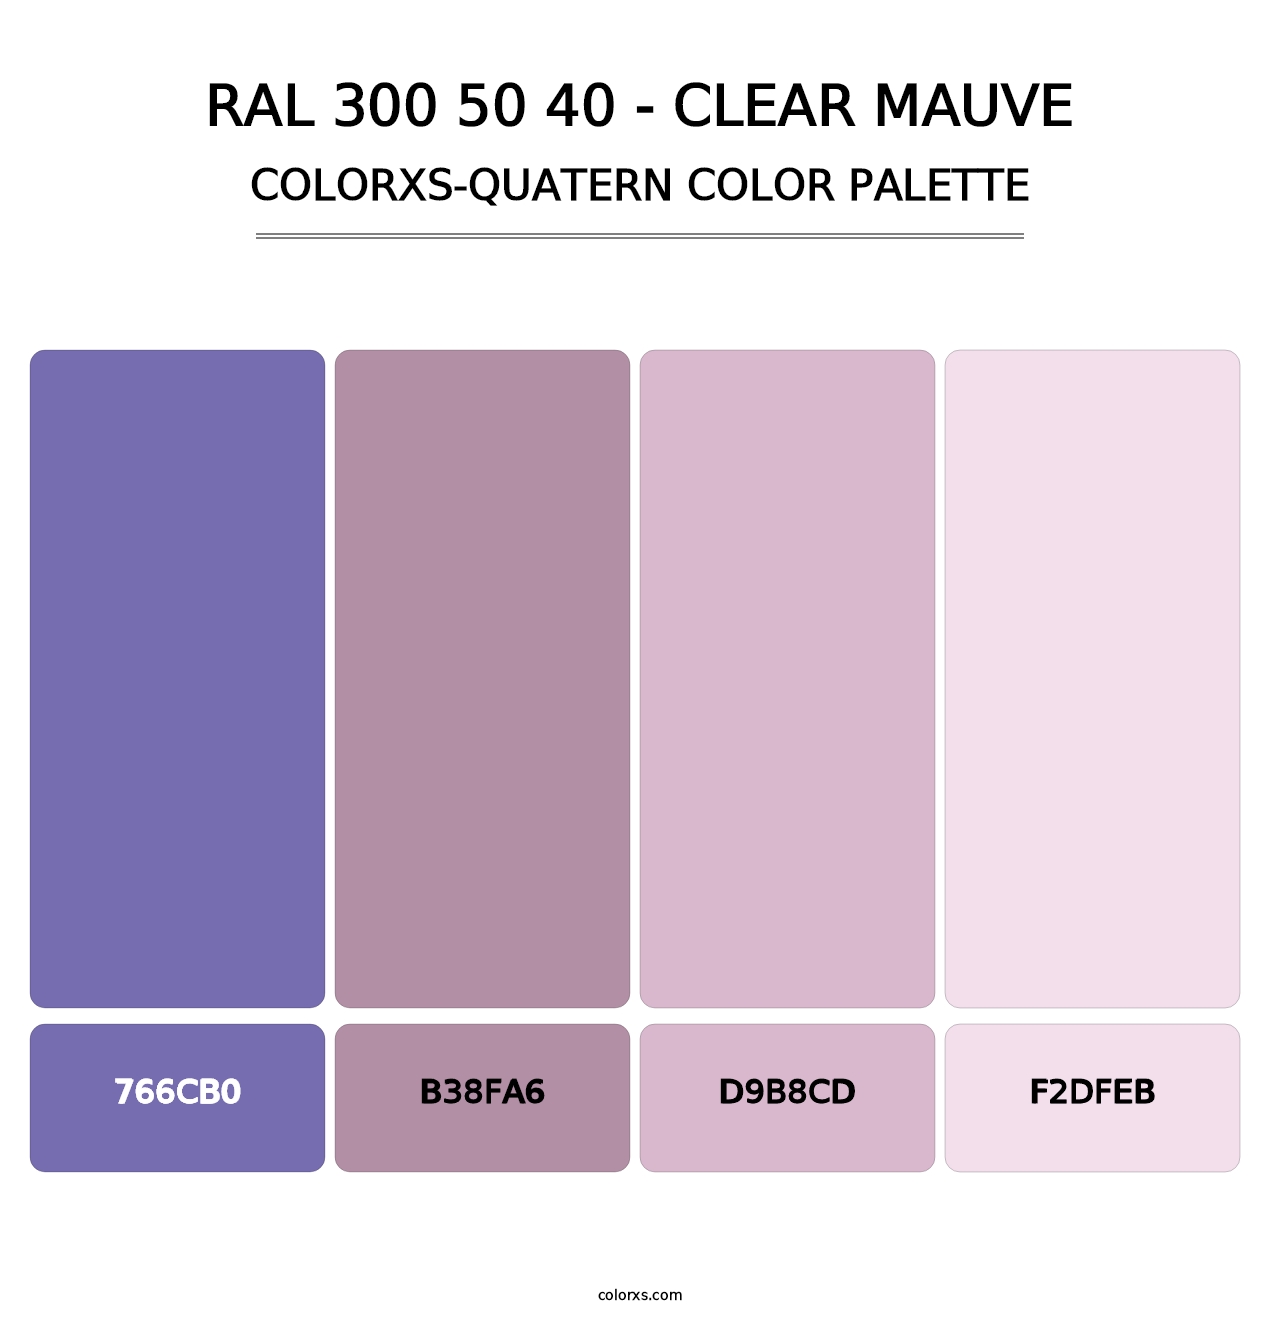 RAL 300 50 40 - Clear Mauve - Colorxs Quatern Palette